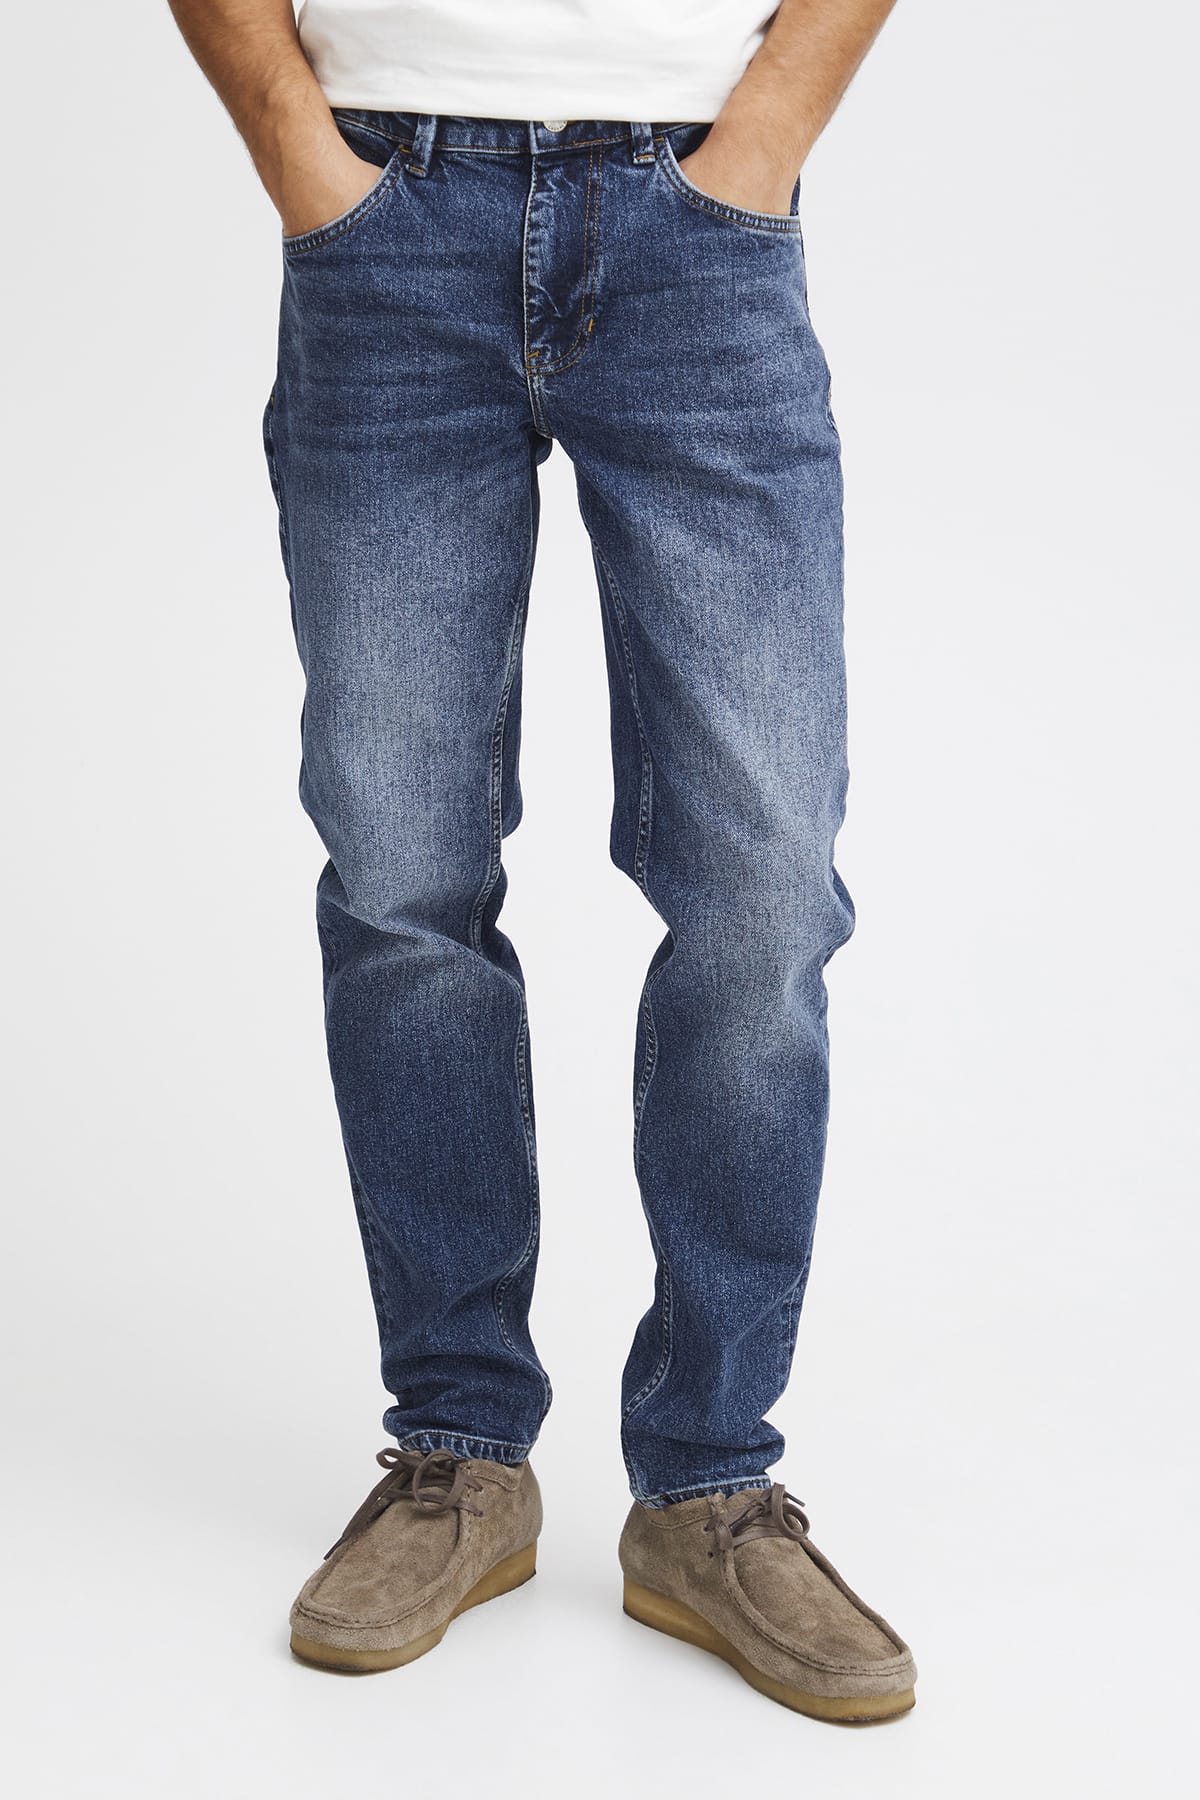 Jeans Karup 5 pocket regular jeans Denim mid blue Jeans Casual Friday 